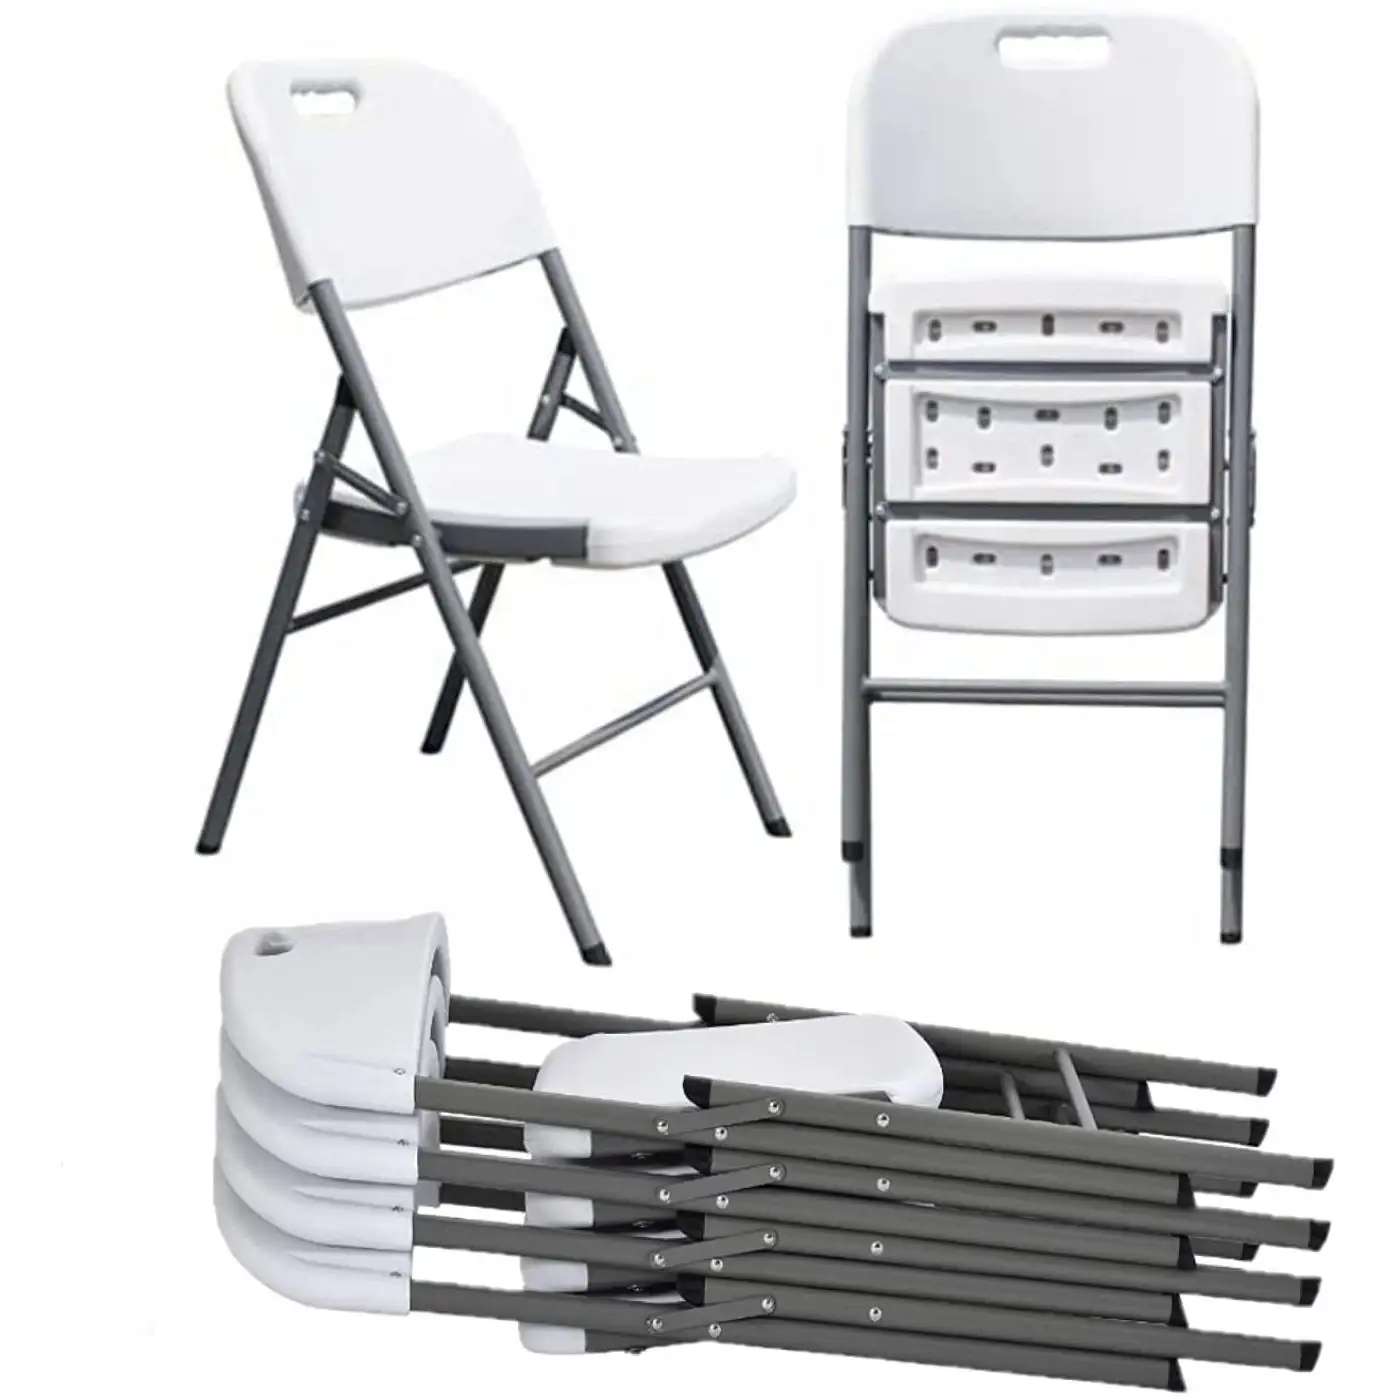 كراسي بيضاء قابلة للطي من البلاستيك للاستئجار في المناسبات HDPE قدرة وزن الكراسي المراسلة المحمولة القابلة للطي كراسي للحفلات المزودة بمساحة وزن 650lbs